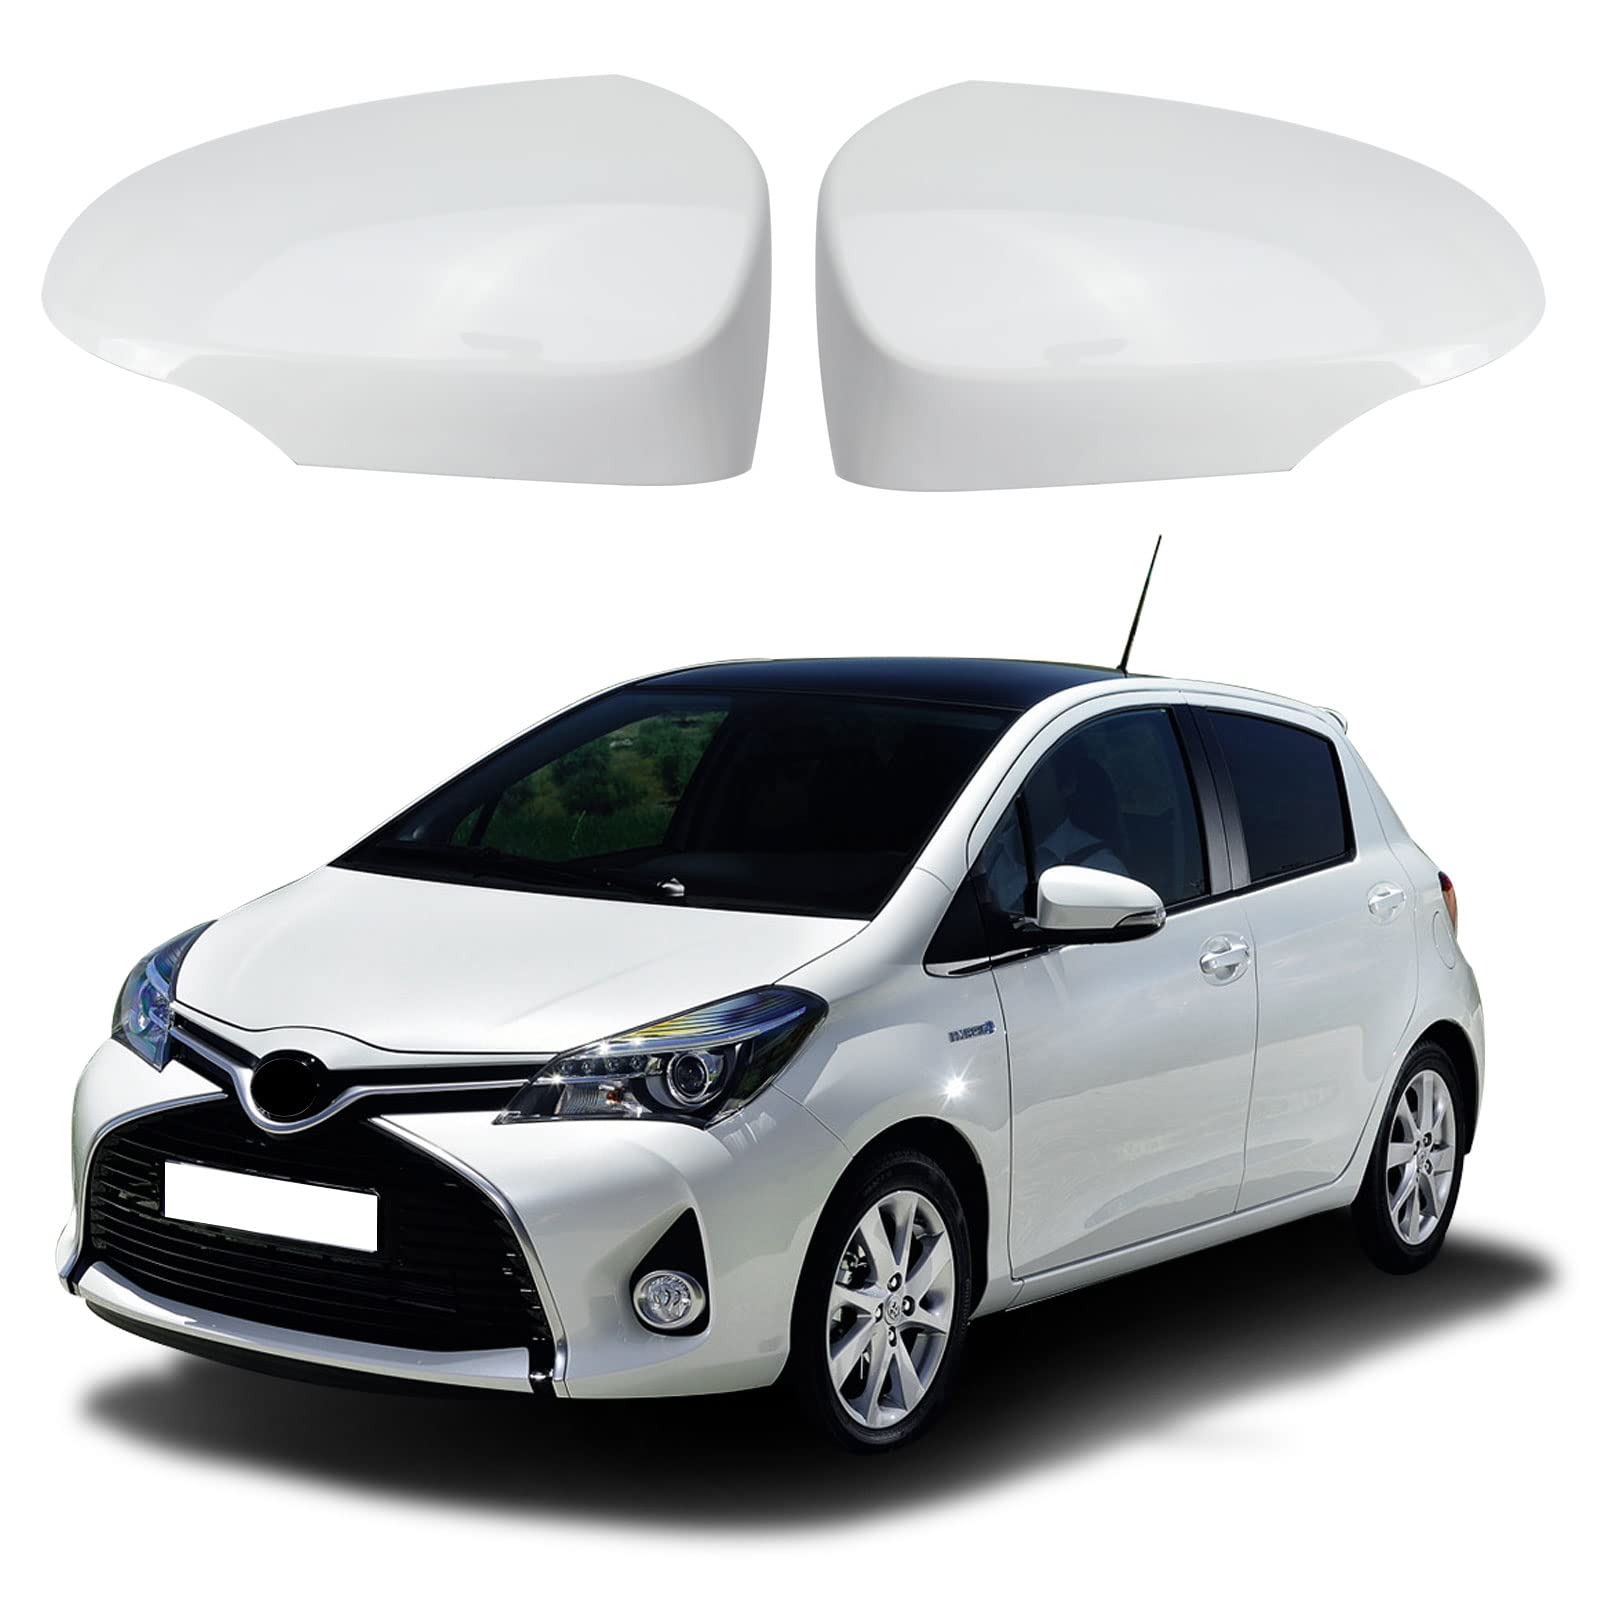 Auto Spiegelkappen, 1 Paar Auto Tür Außenspiegelkappe Rückspiegelkappe Seitenspiegel Abdeckungen für Toyota Yaris 2012-2019 (Weiß) von ConBlom